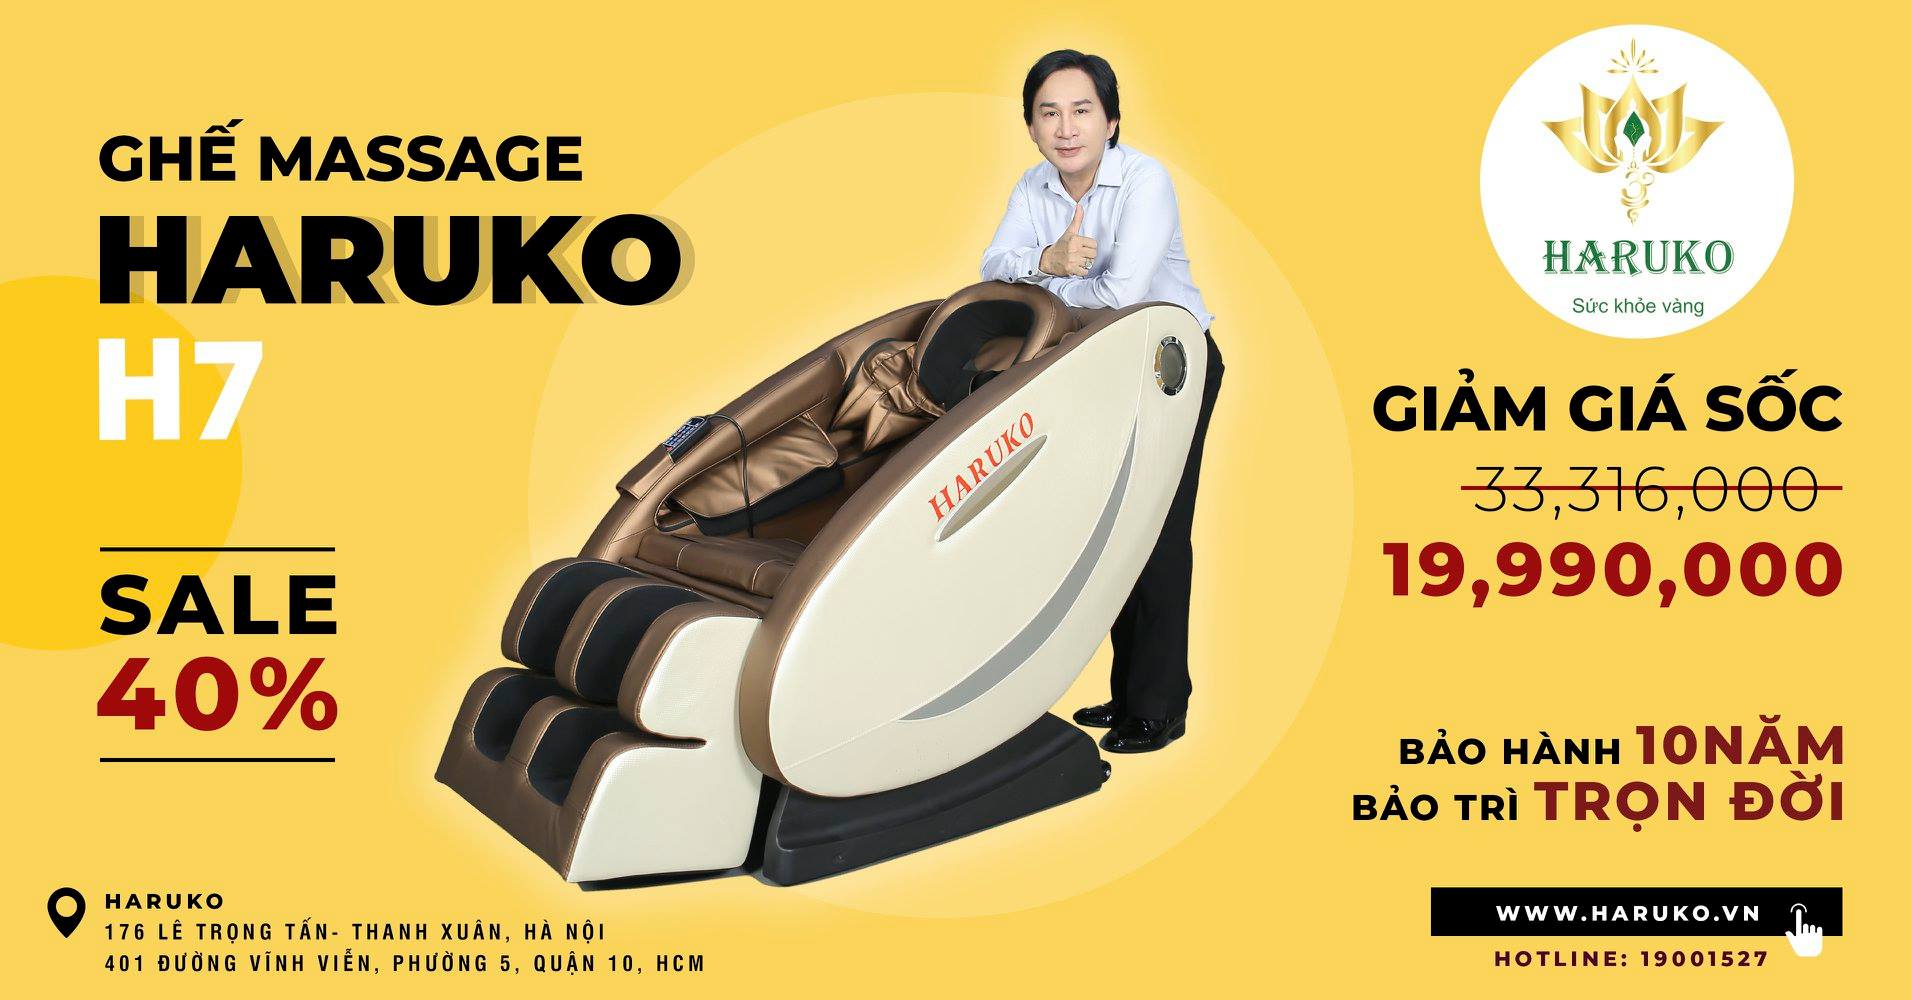 Ghế massage đa năng Haruko H6 được nhiều gia đình ưa chuộng vì tính năng của nó đem lại